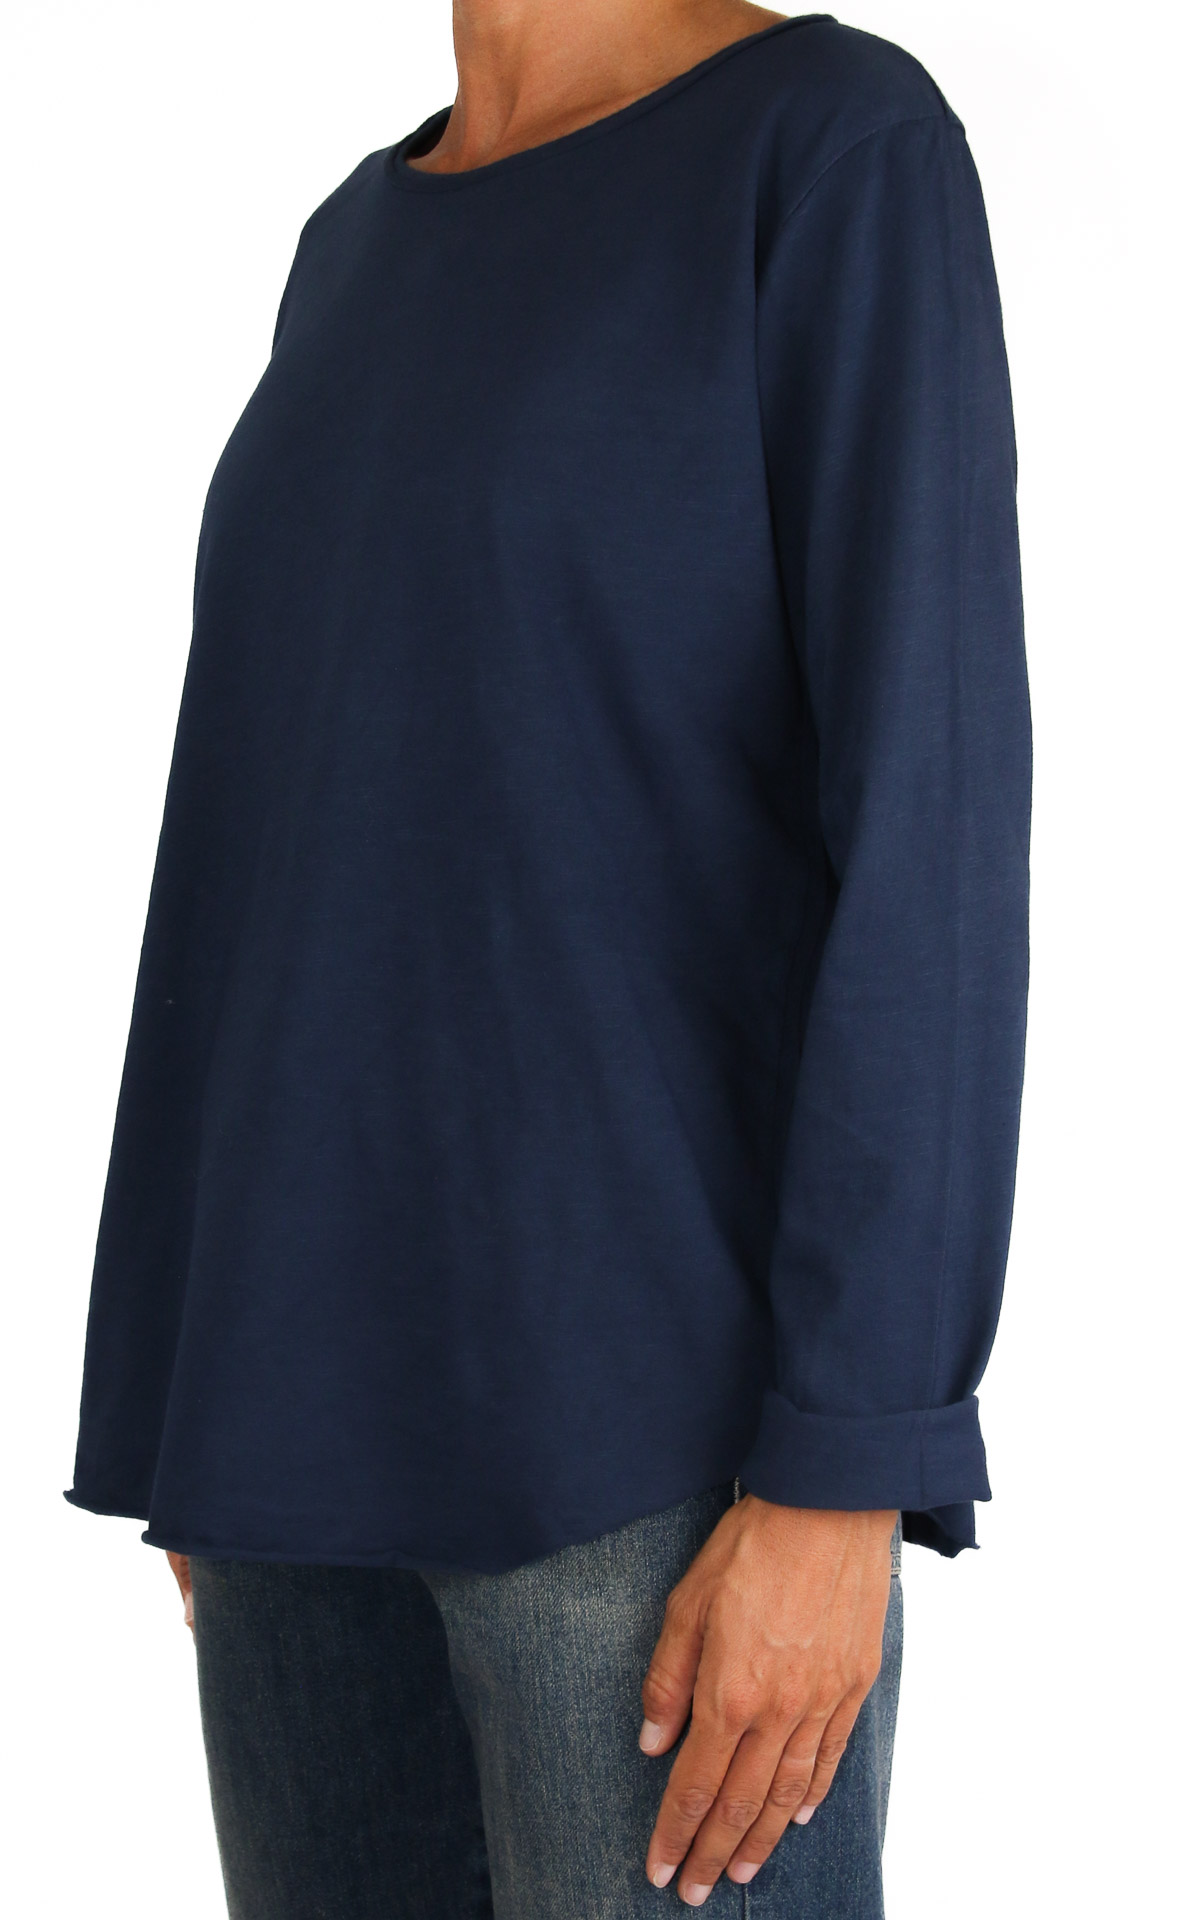 Initial - t-shirt cotone girocollo - blu